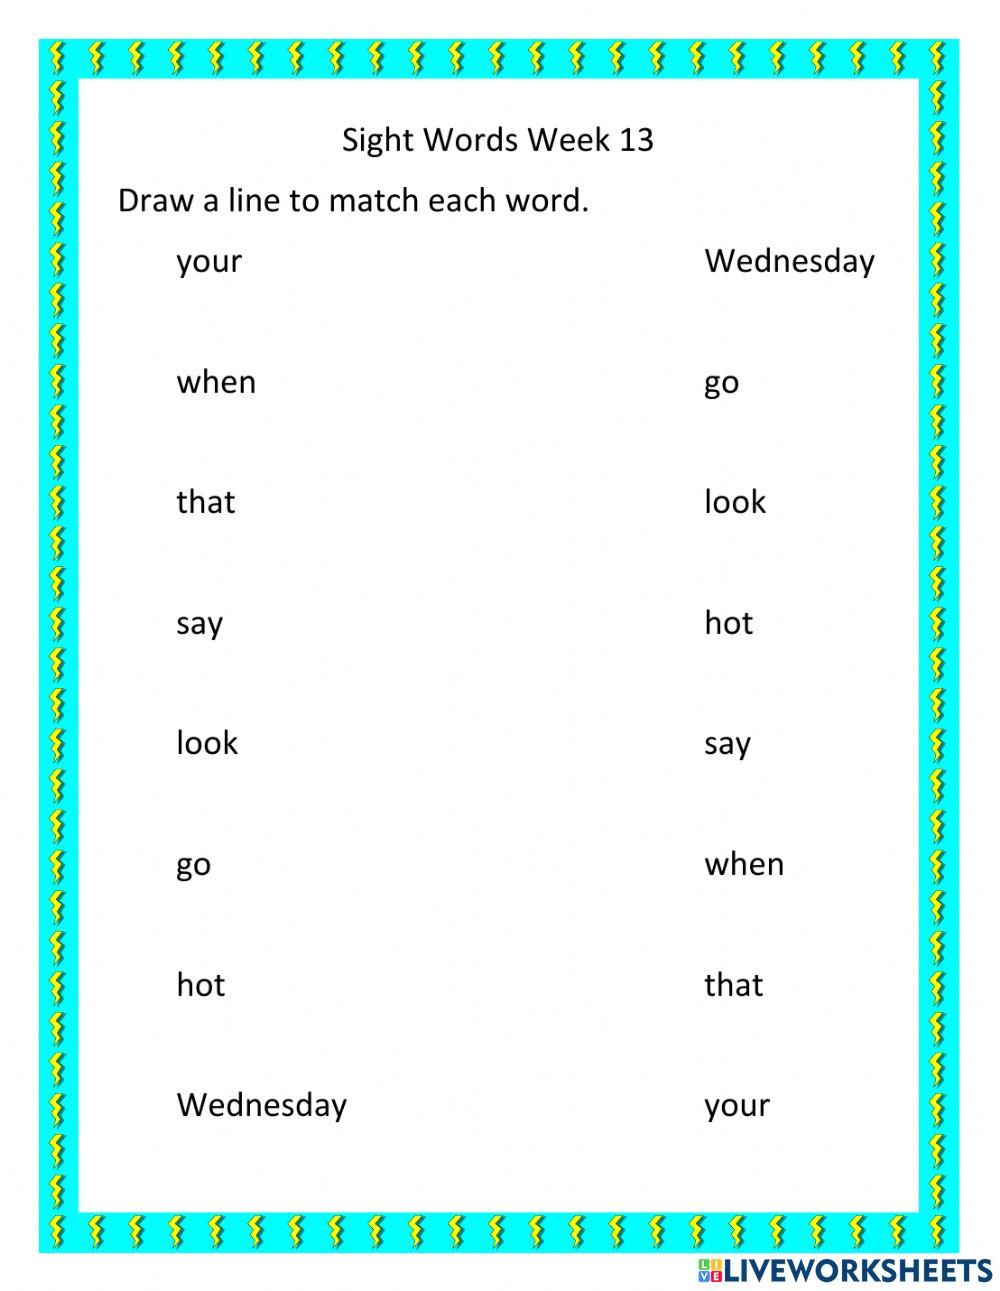 Sight Words Week 13